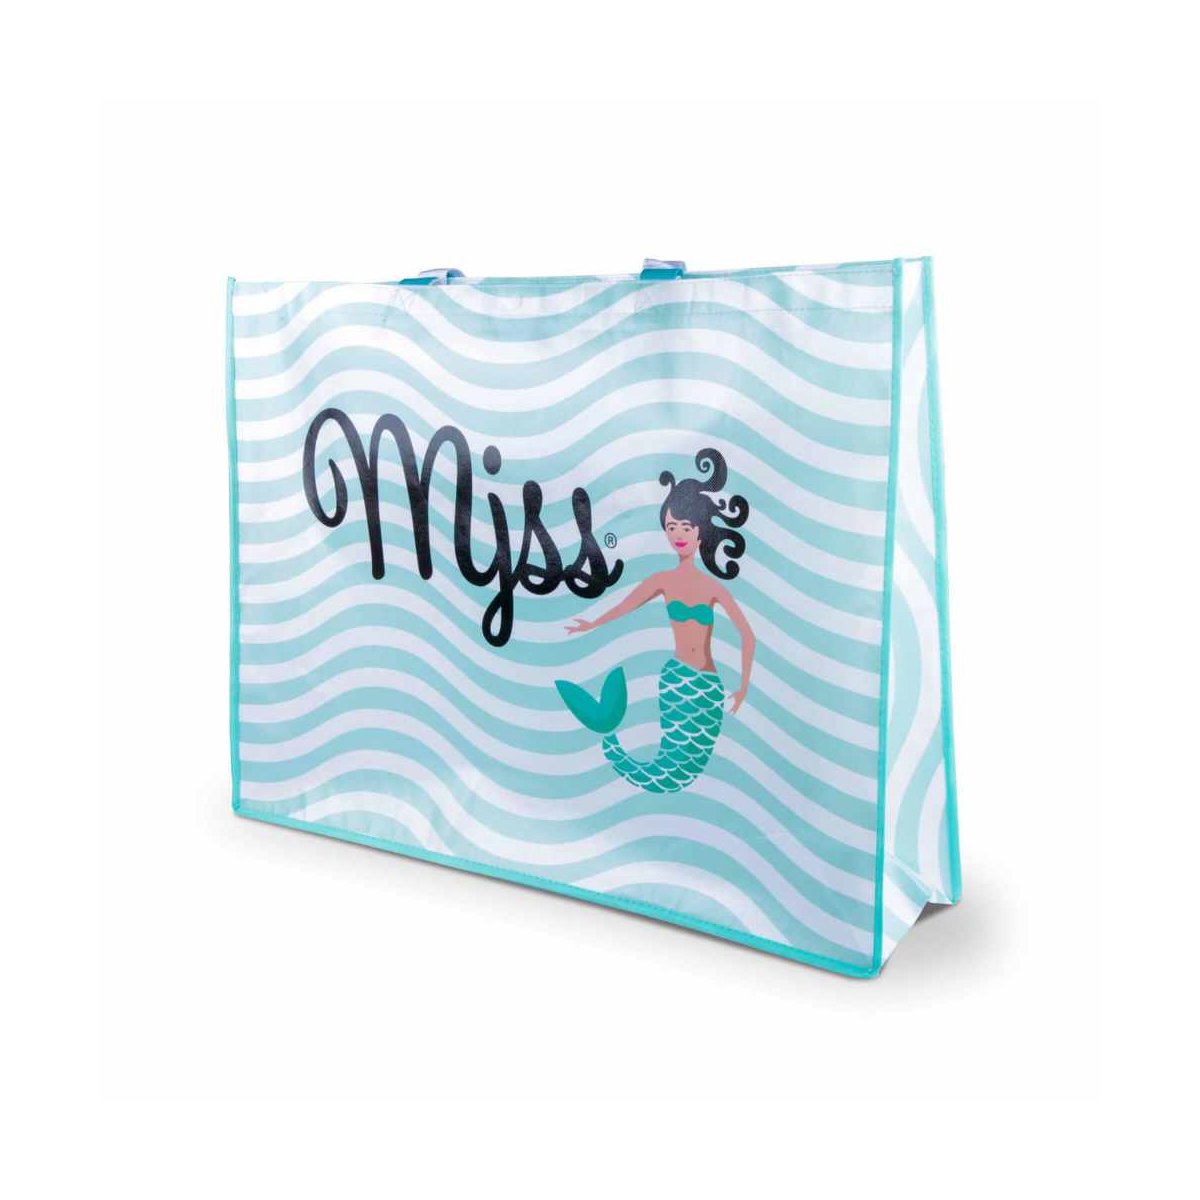 Die vielseitige Meerjungfrauen Tragtasche von MJSS - Meerjungfrauen Tragtasche zum einkaufen!